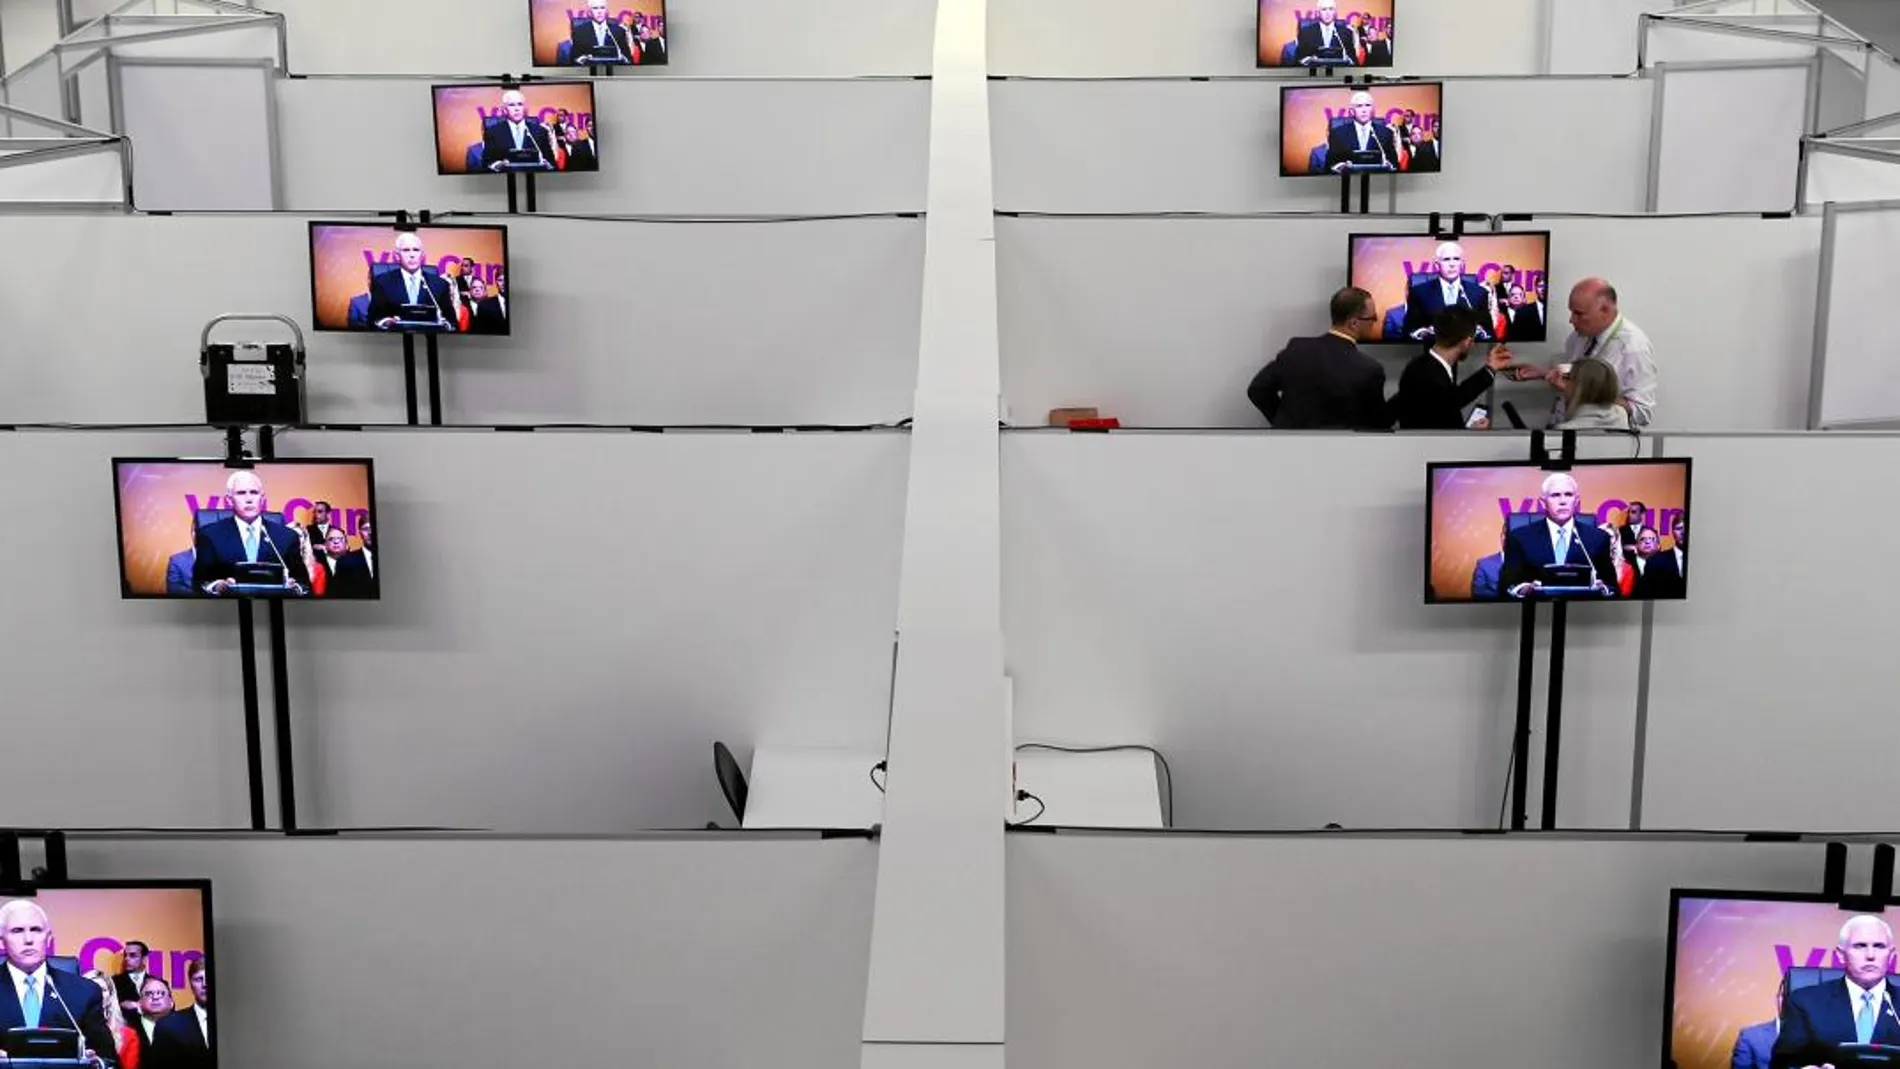 Mike Pence, vicepresidente de Estados Unidos, protagonista en todas las pantallas del centro de Prensa durante su alocución